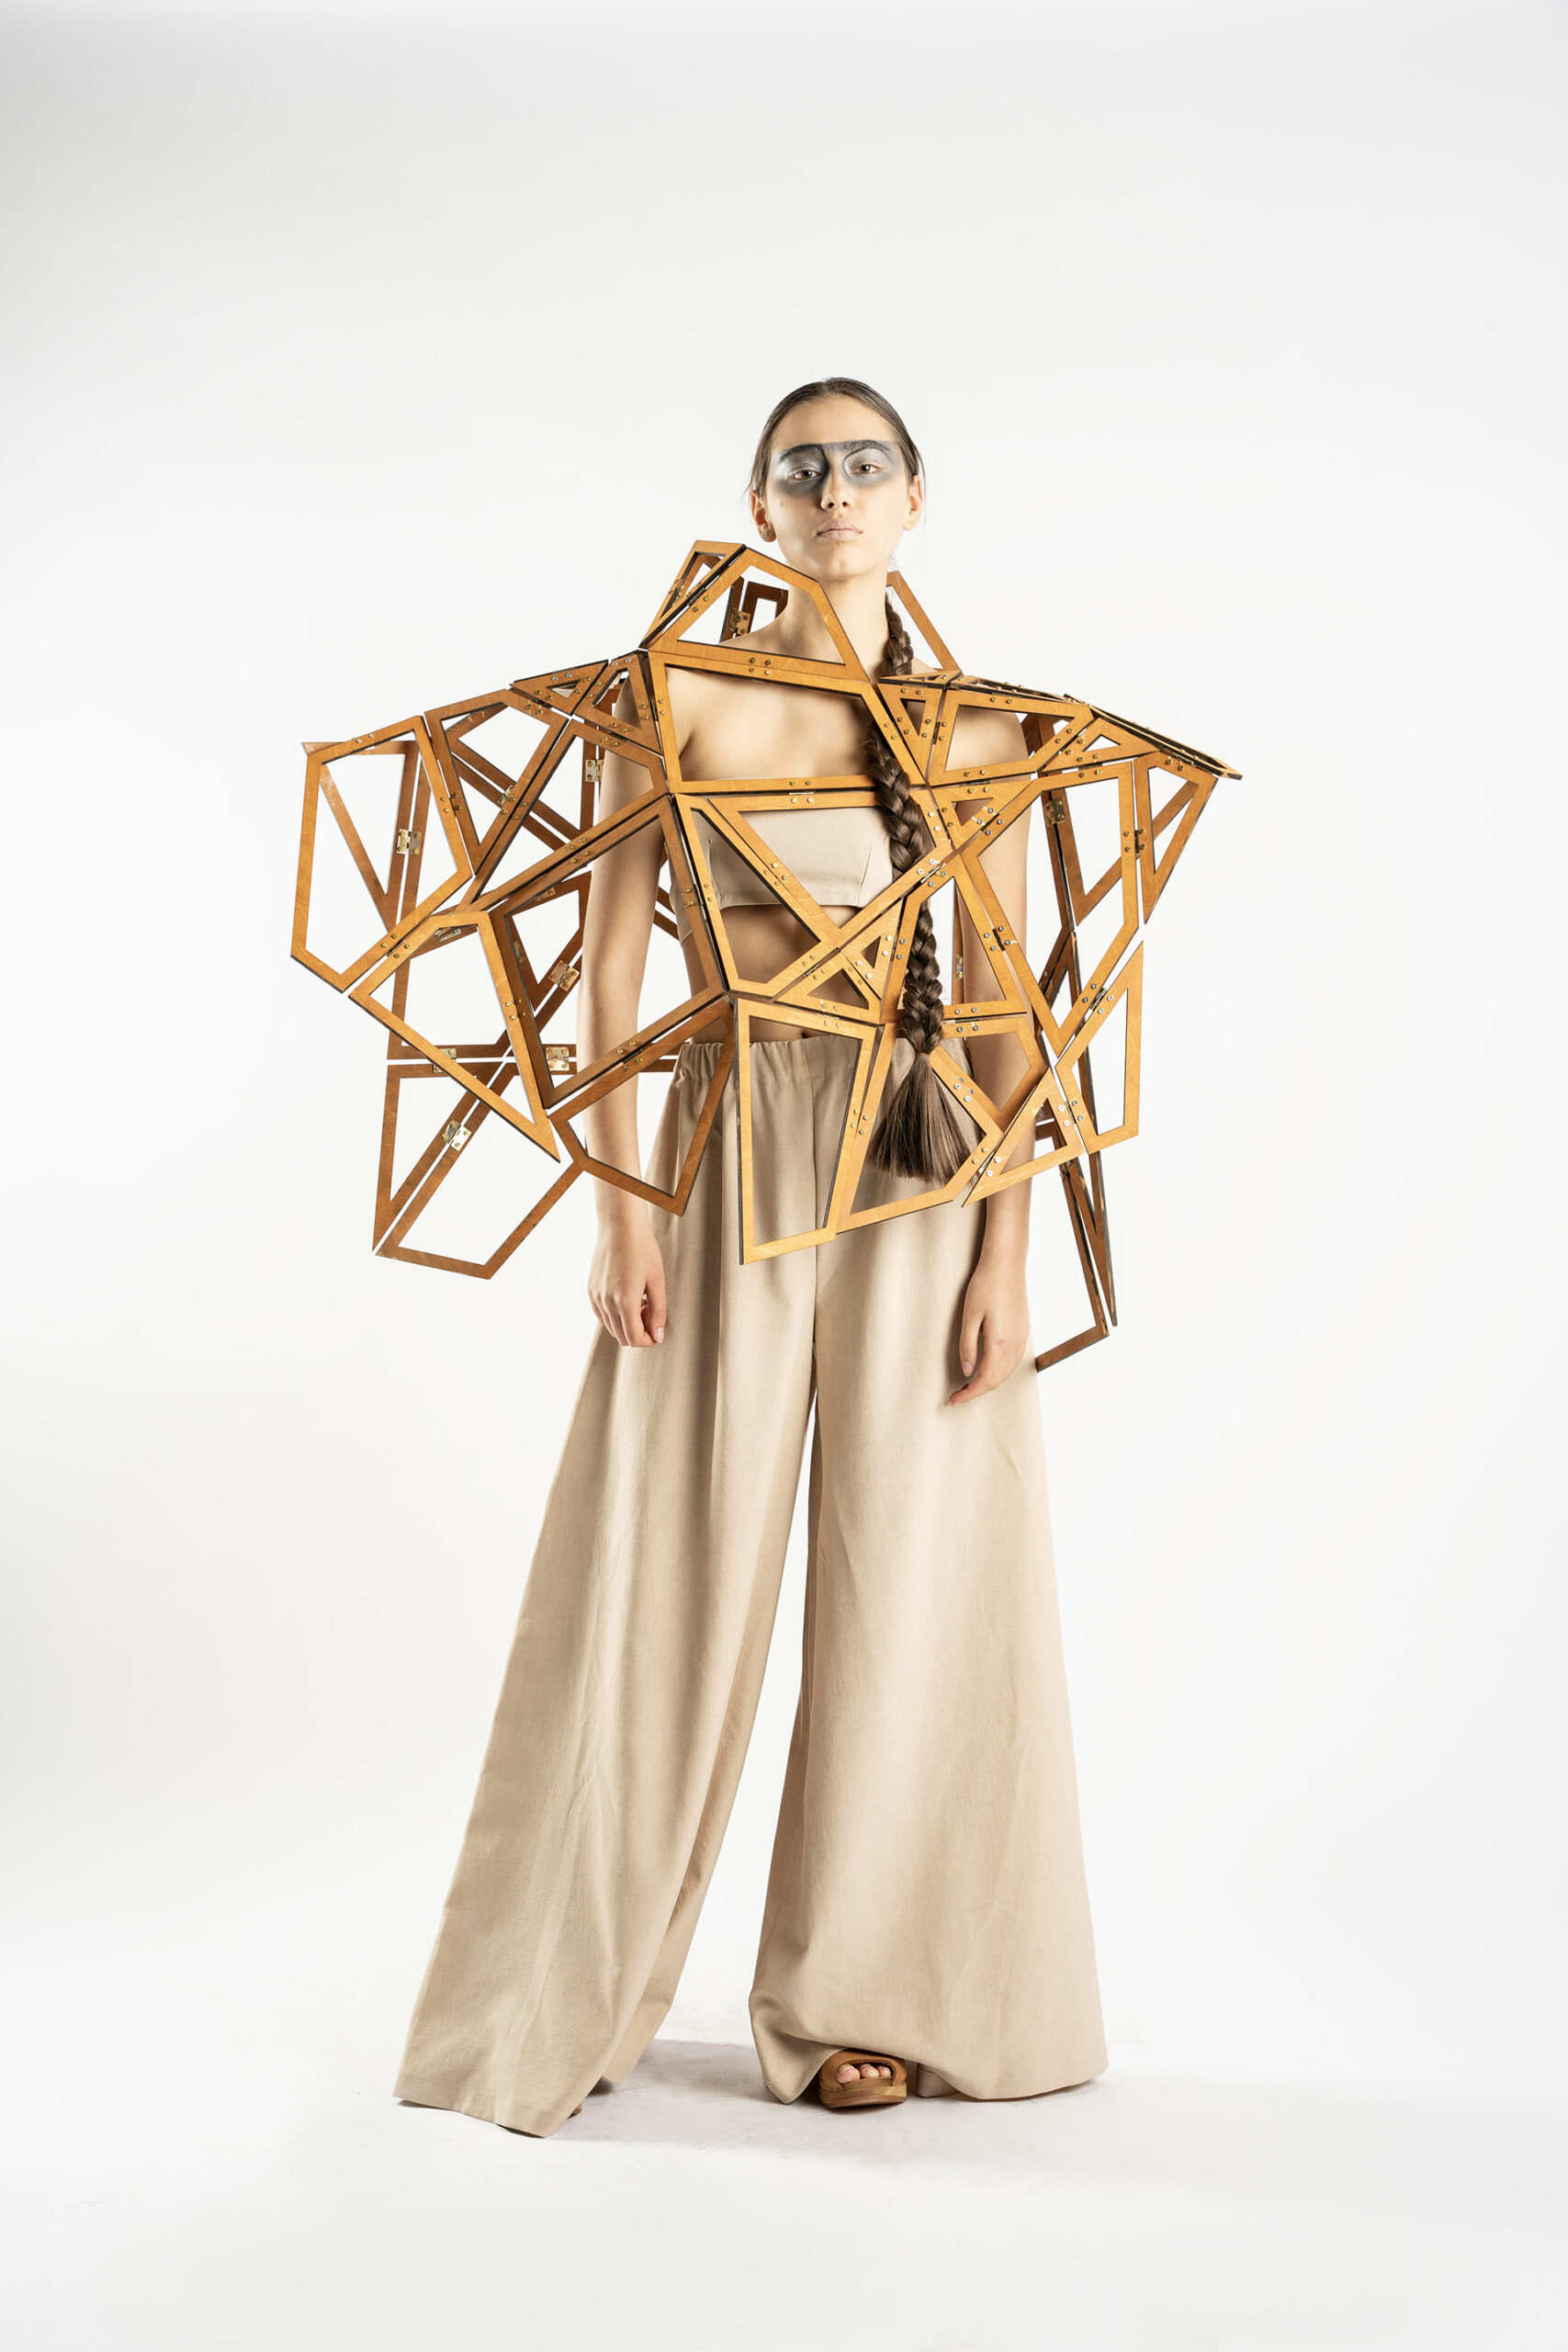 Zdjęcie kobiety w spodniach, topie i drewnianej, geometrycznej, ażurowej konstrukcji na ramionach